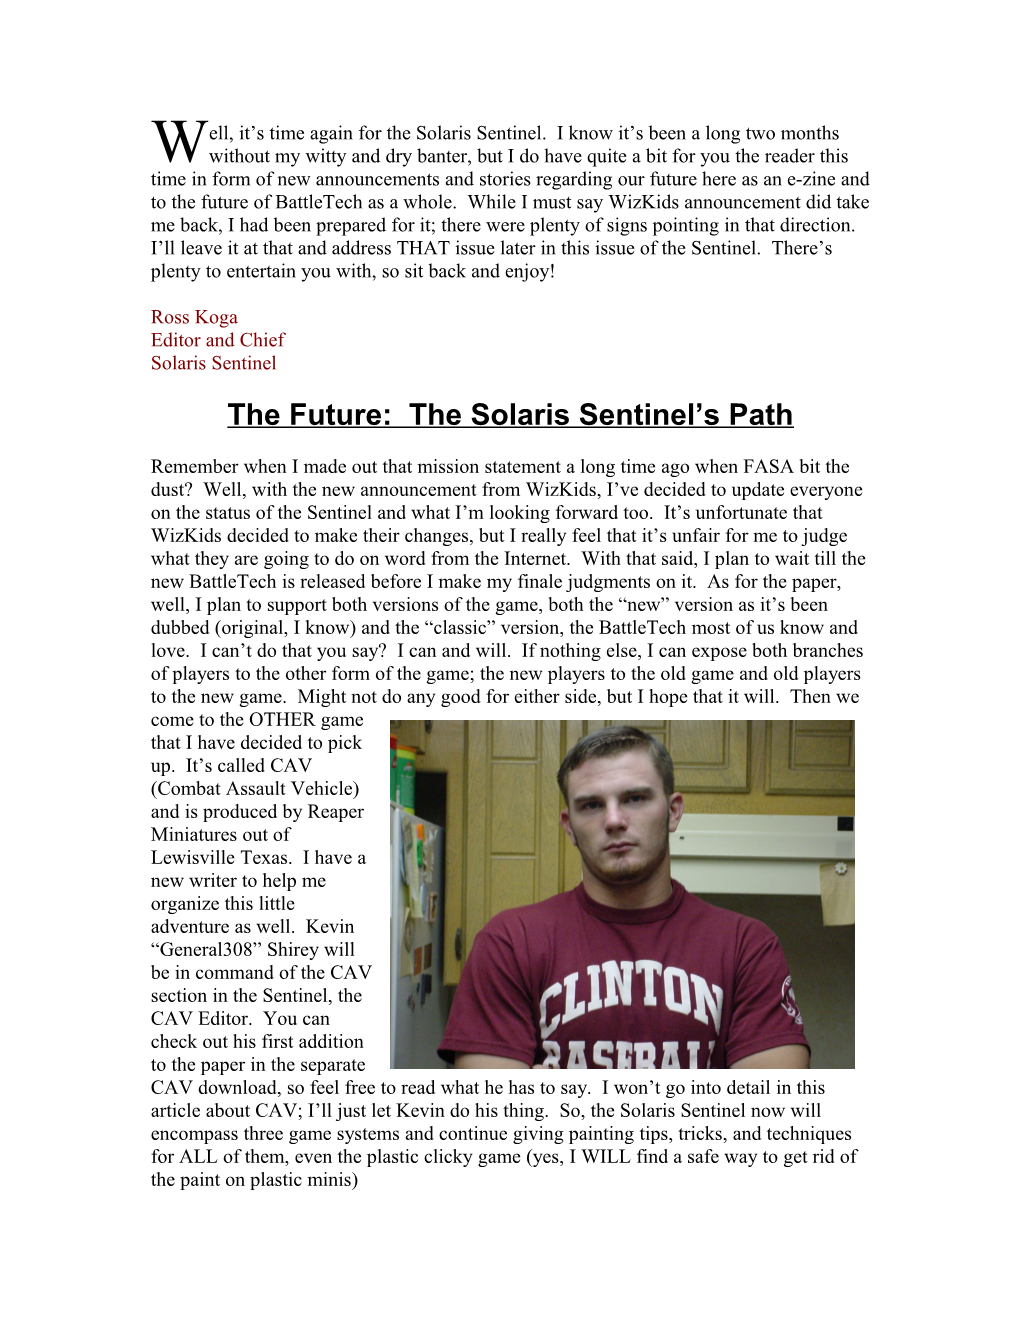 The Future: the Solaris Sentinel S Path